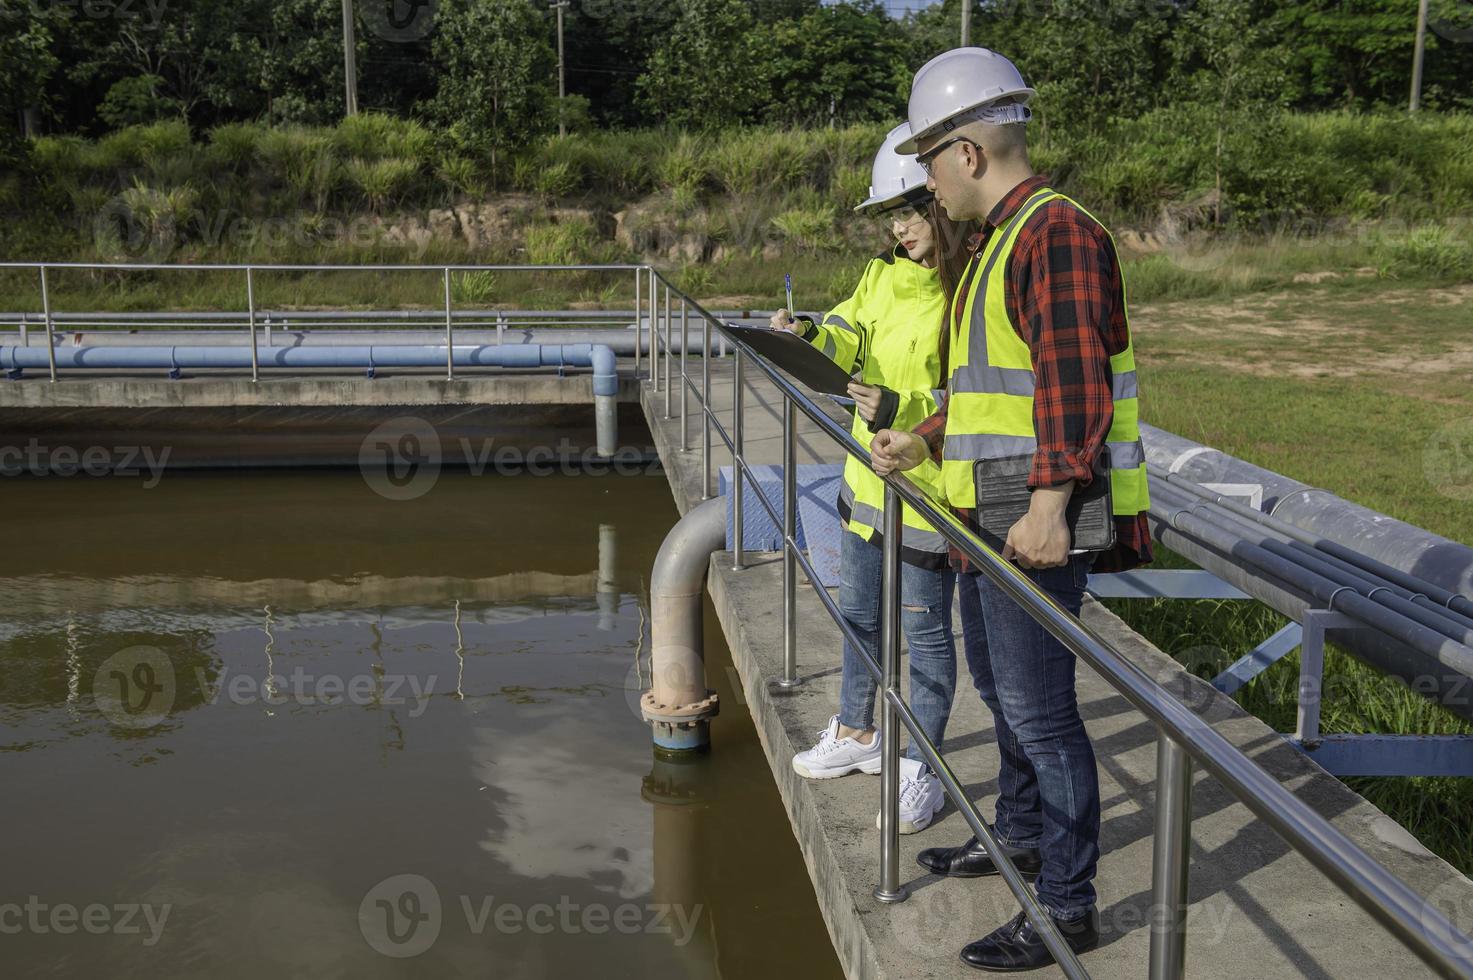 engenheiros ambientais trabalham em estações de tratamento de águas residuais, engenharia de abastecimento de água trabalhando em usinas de reciclagem de água para reutilização, técnicos e engenheiros discutem o trabalho em conjunto. foto